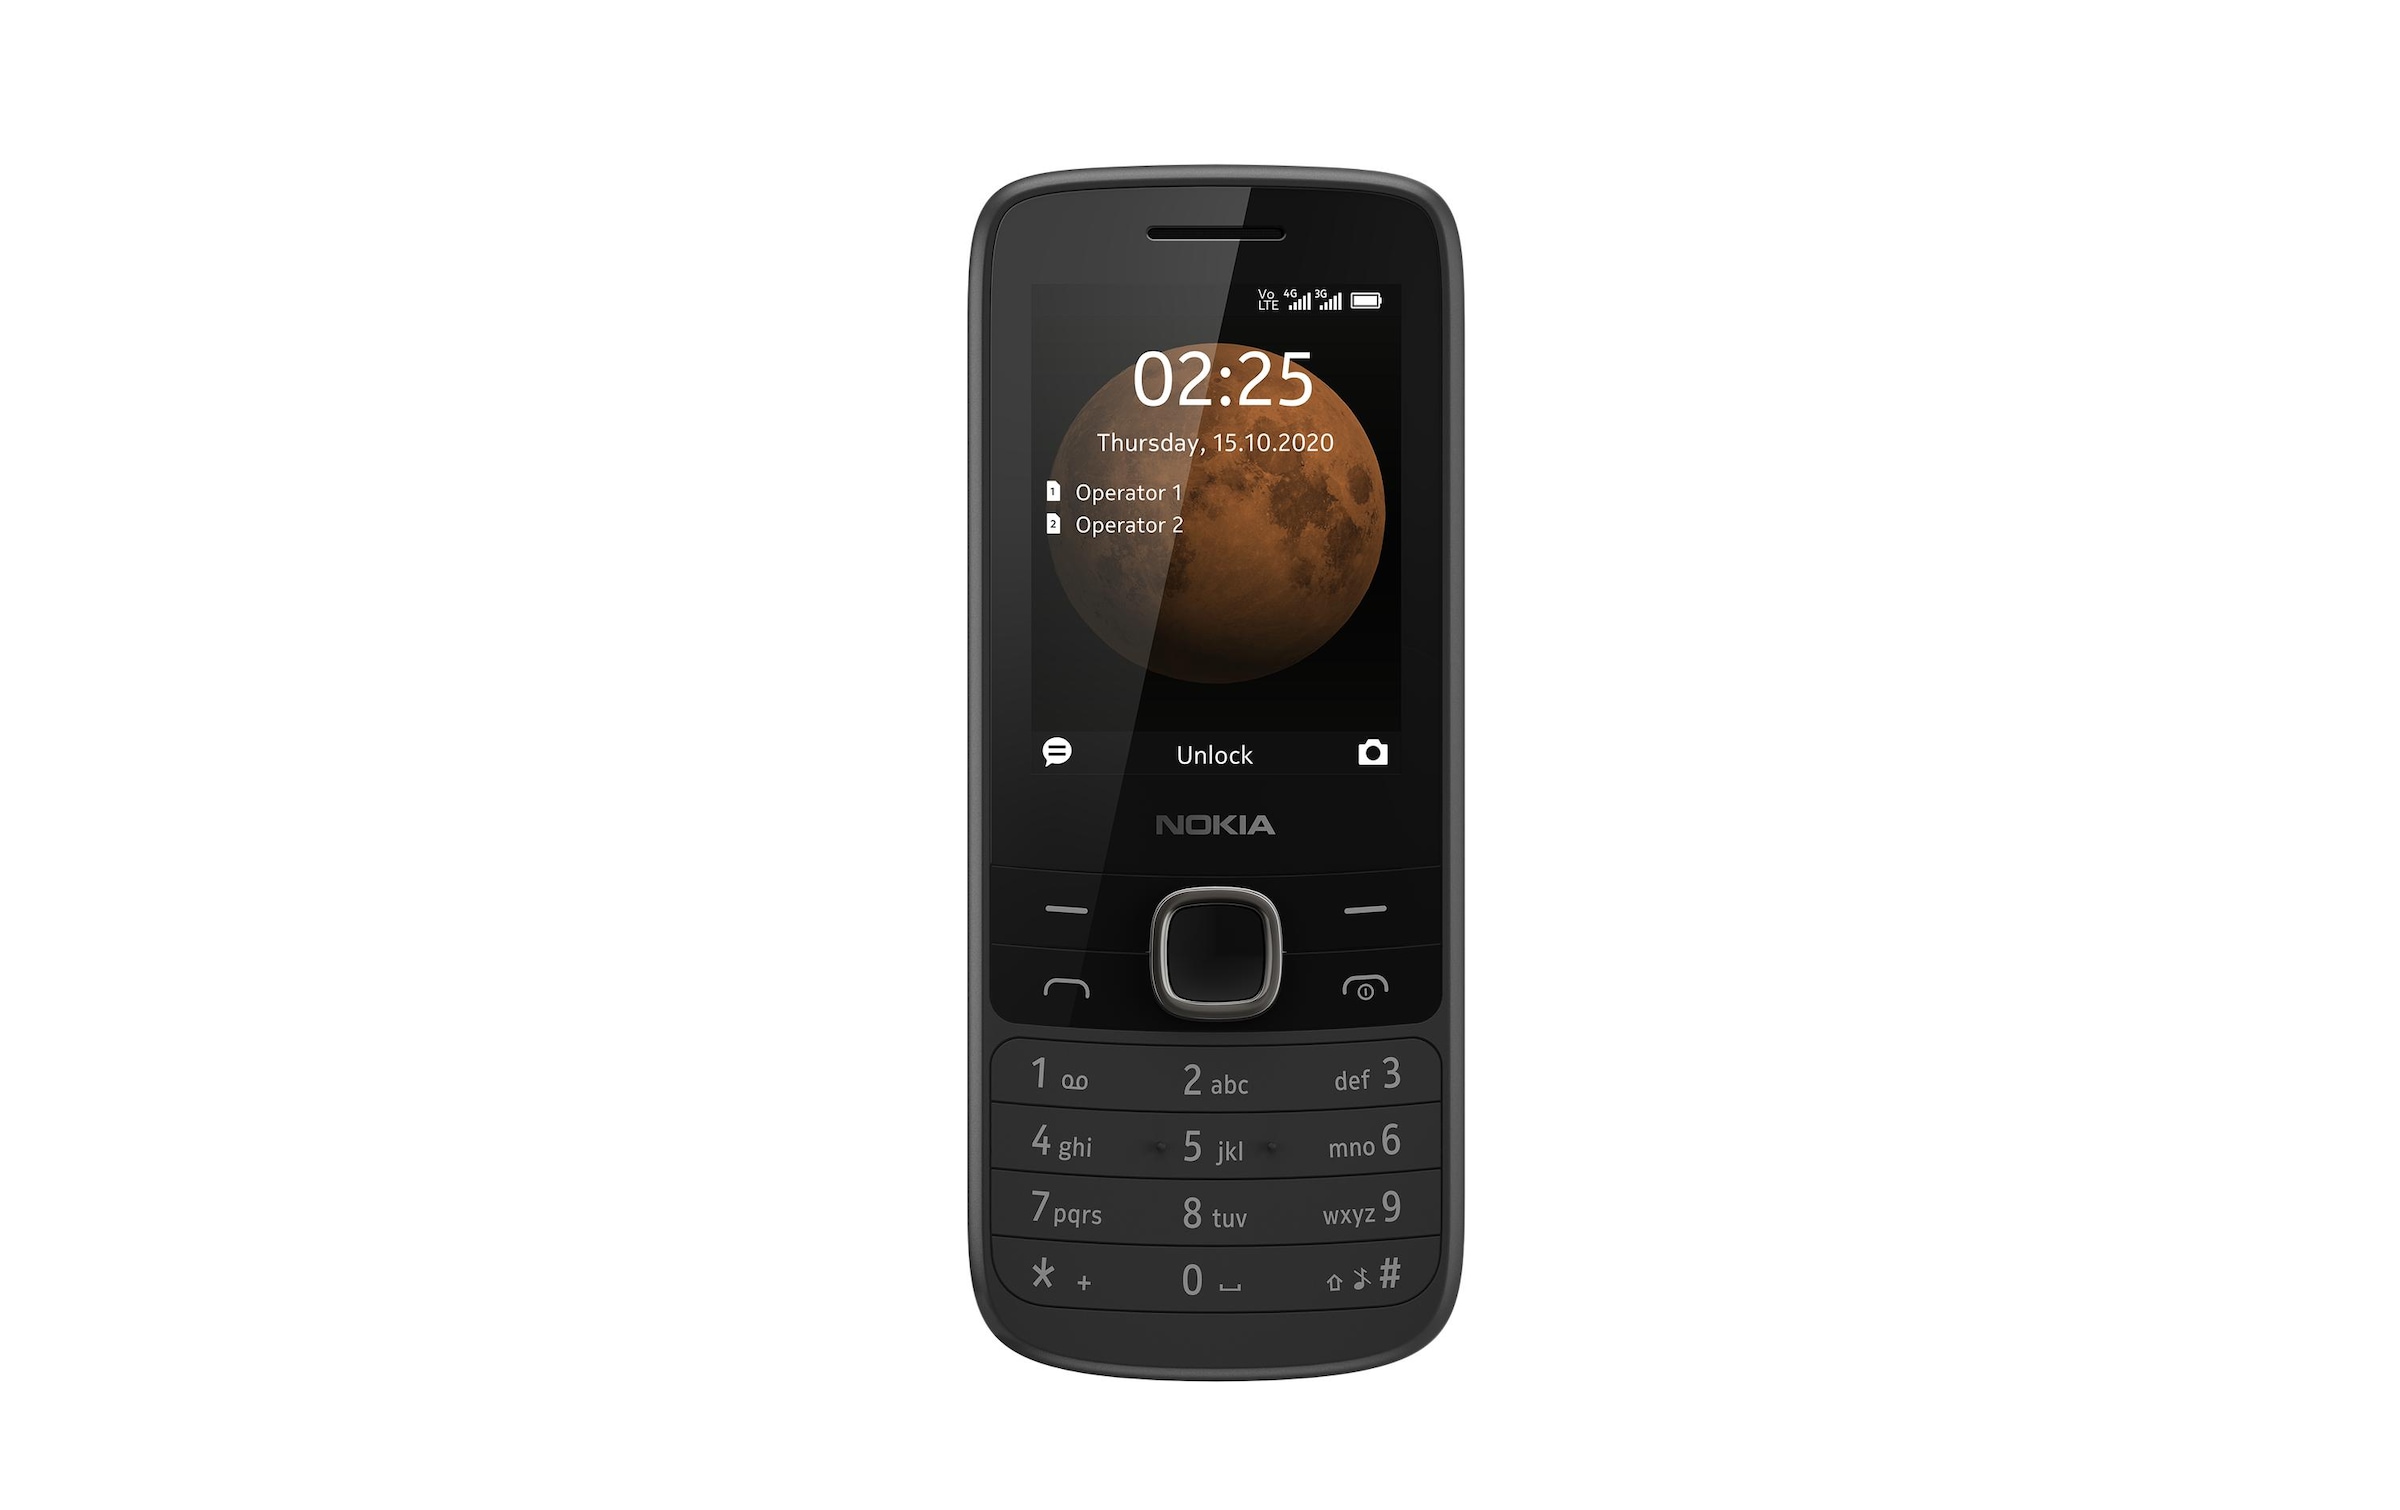 Nokia Smartphone »225, 4G Schwarz«, schwarz, 6,1 cm/2,4 Zoll, 0,128 GB Speicherplatz